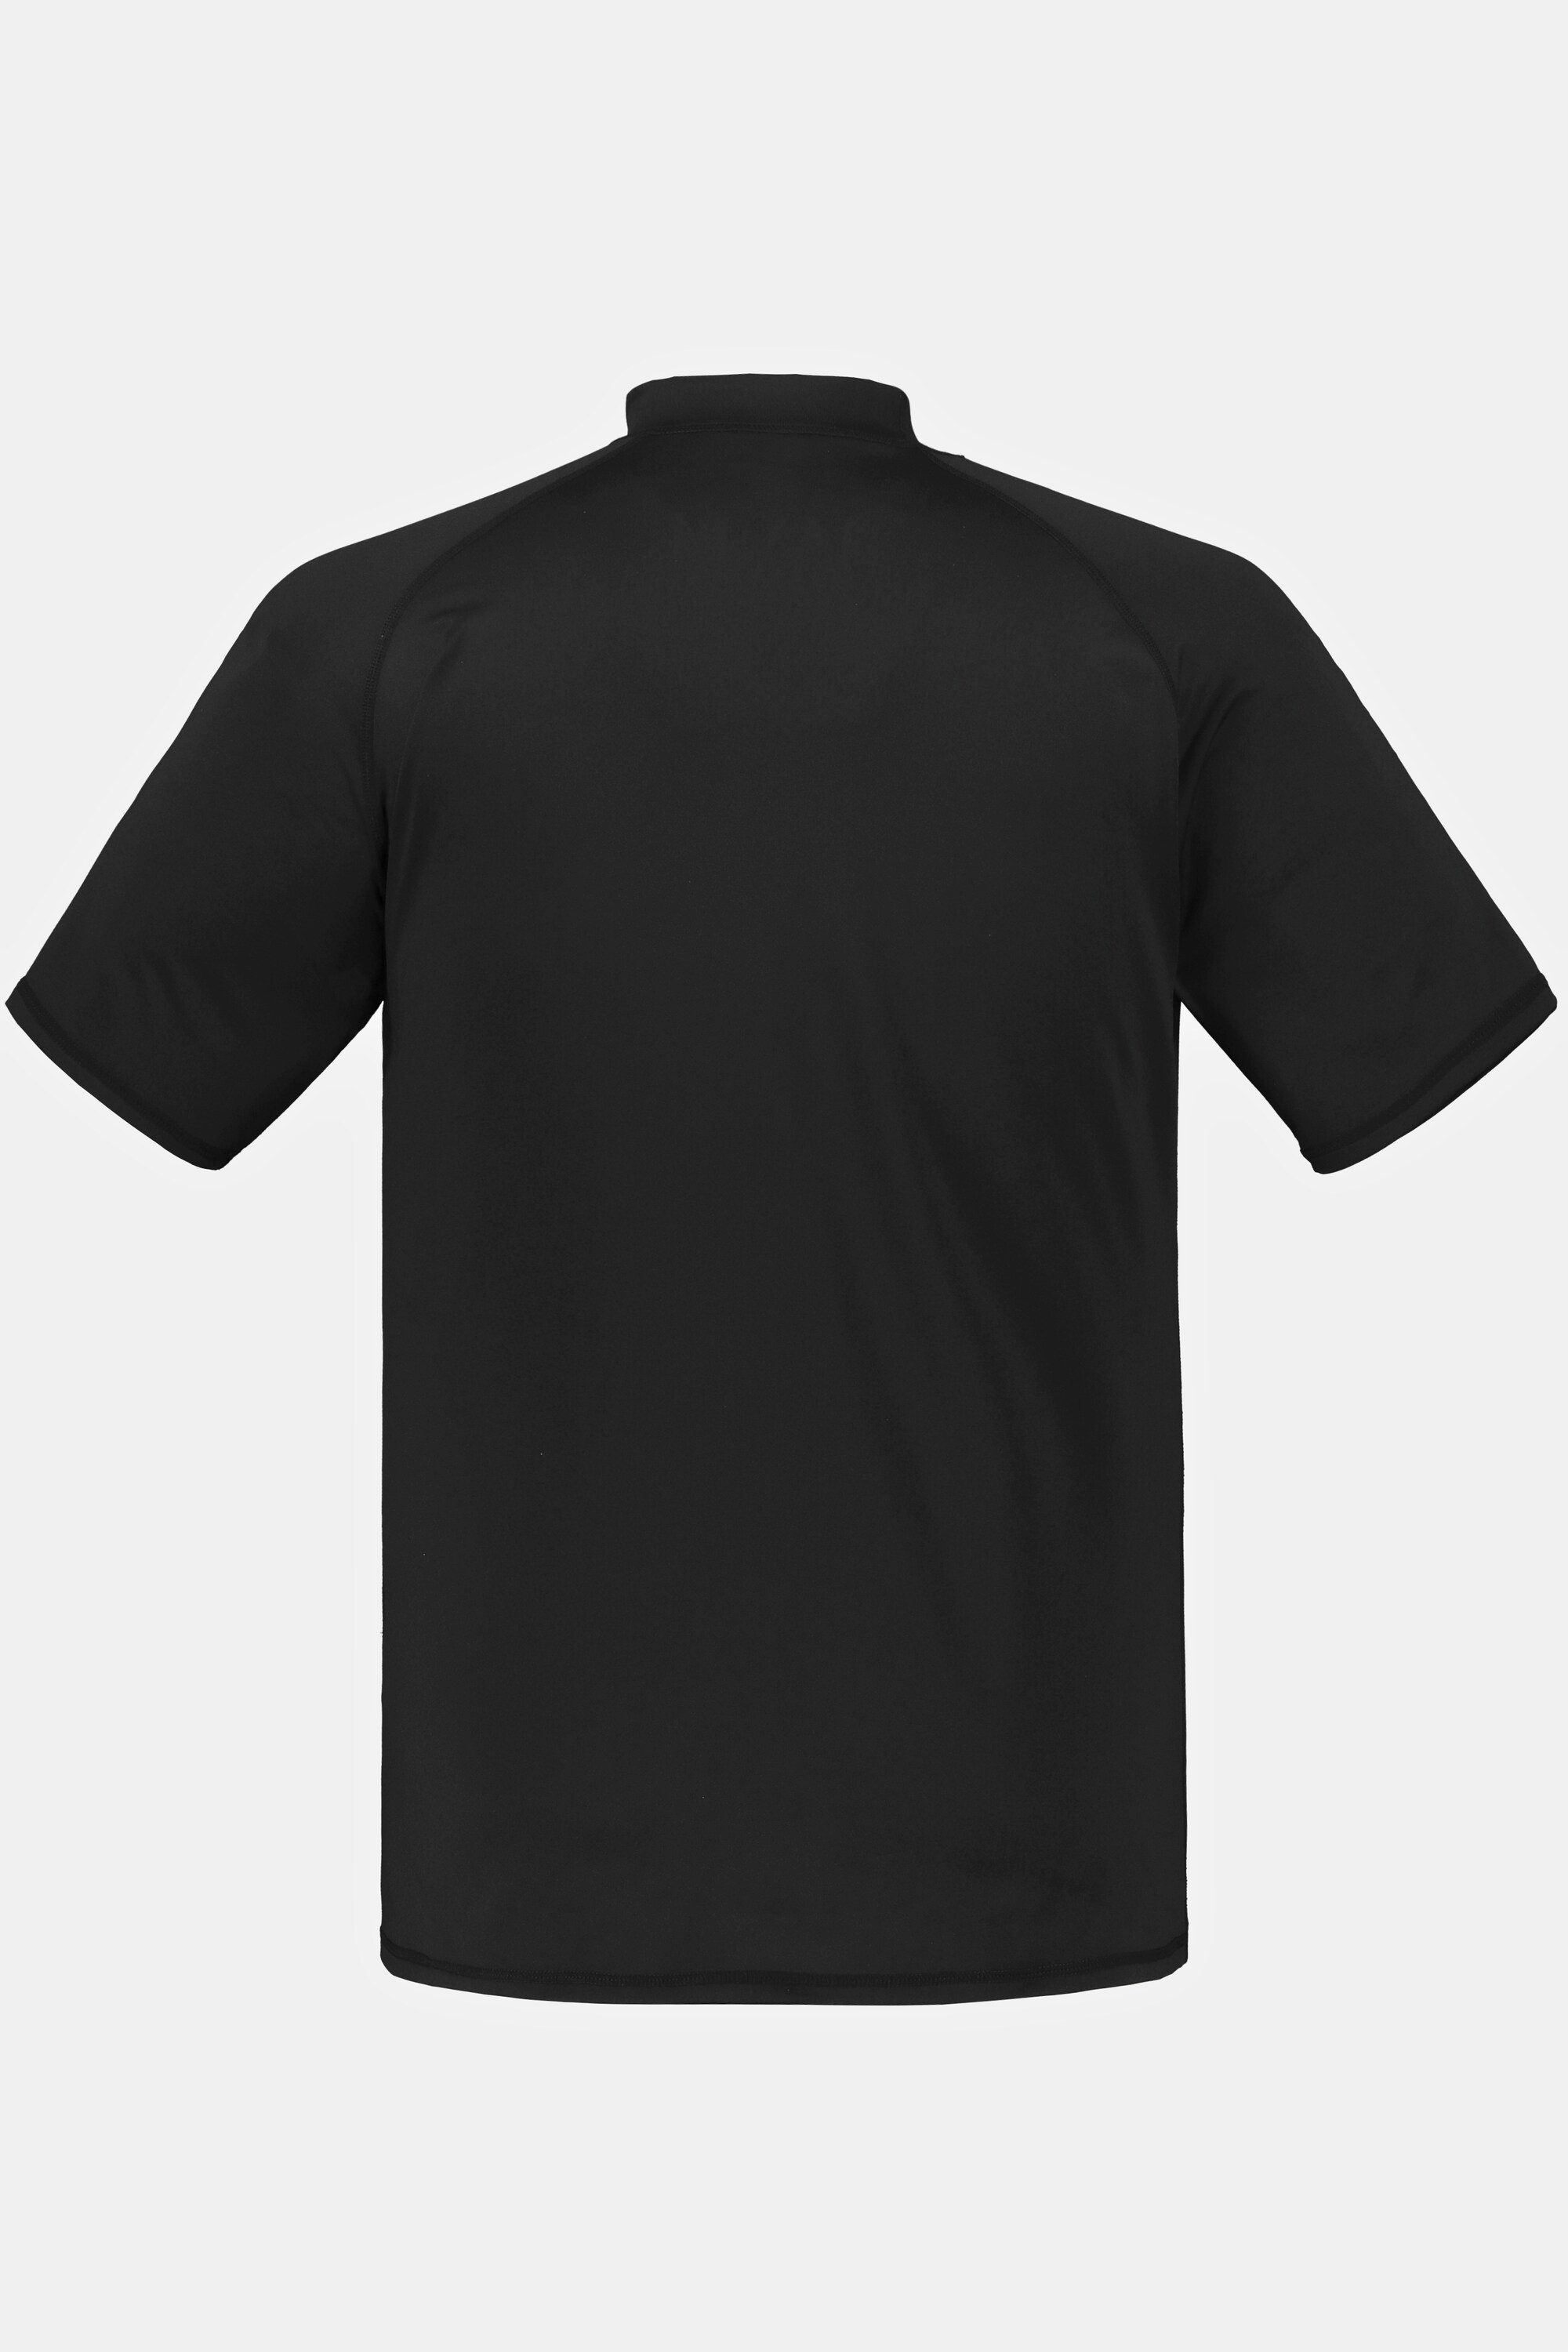 schwarz Halbarm UV-Schutz Stehkragen T-Shirt Schwimmshirt JP1880